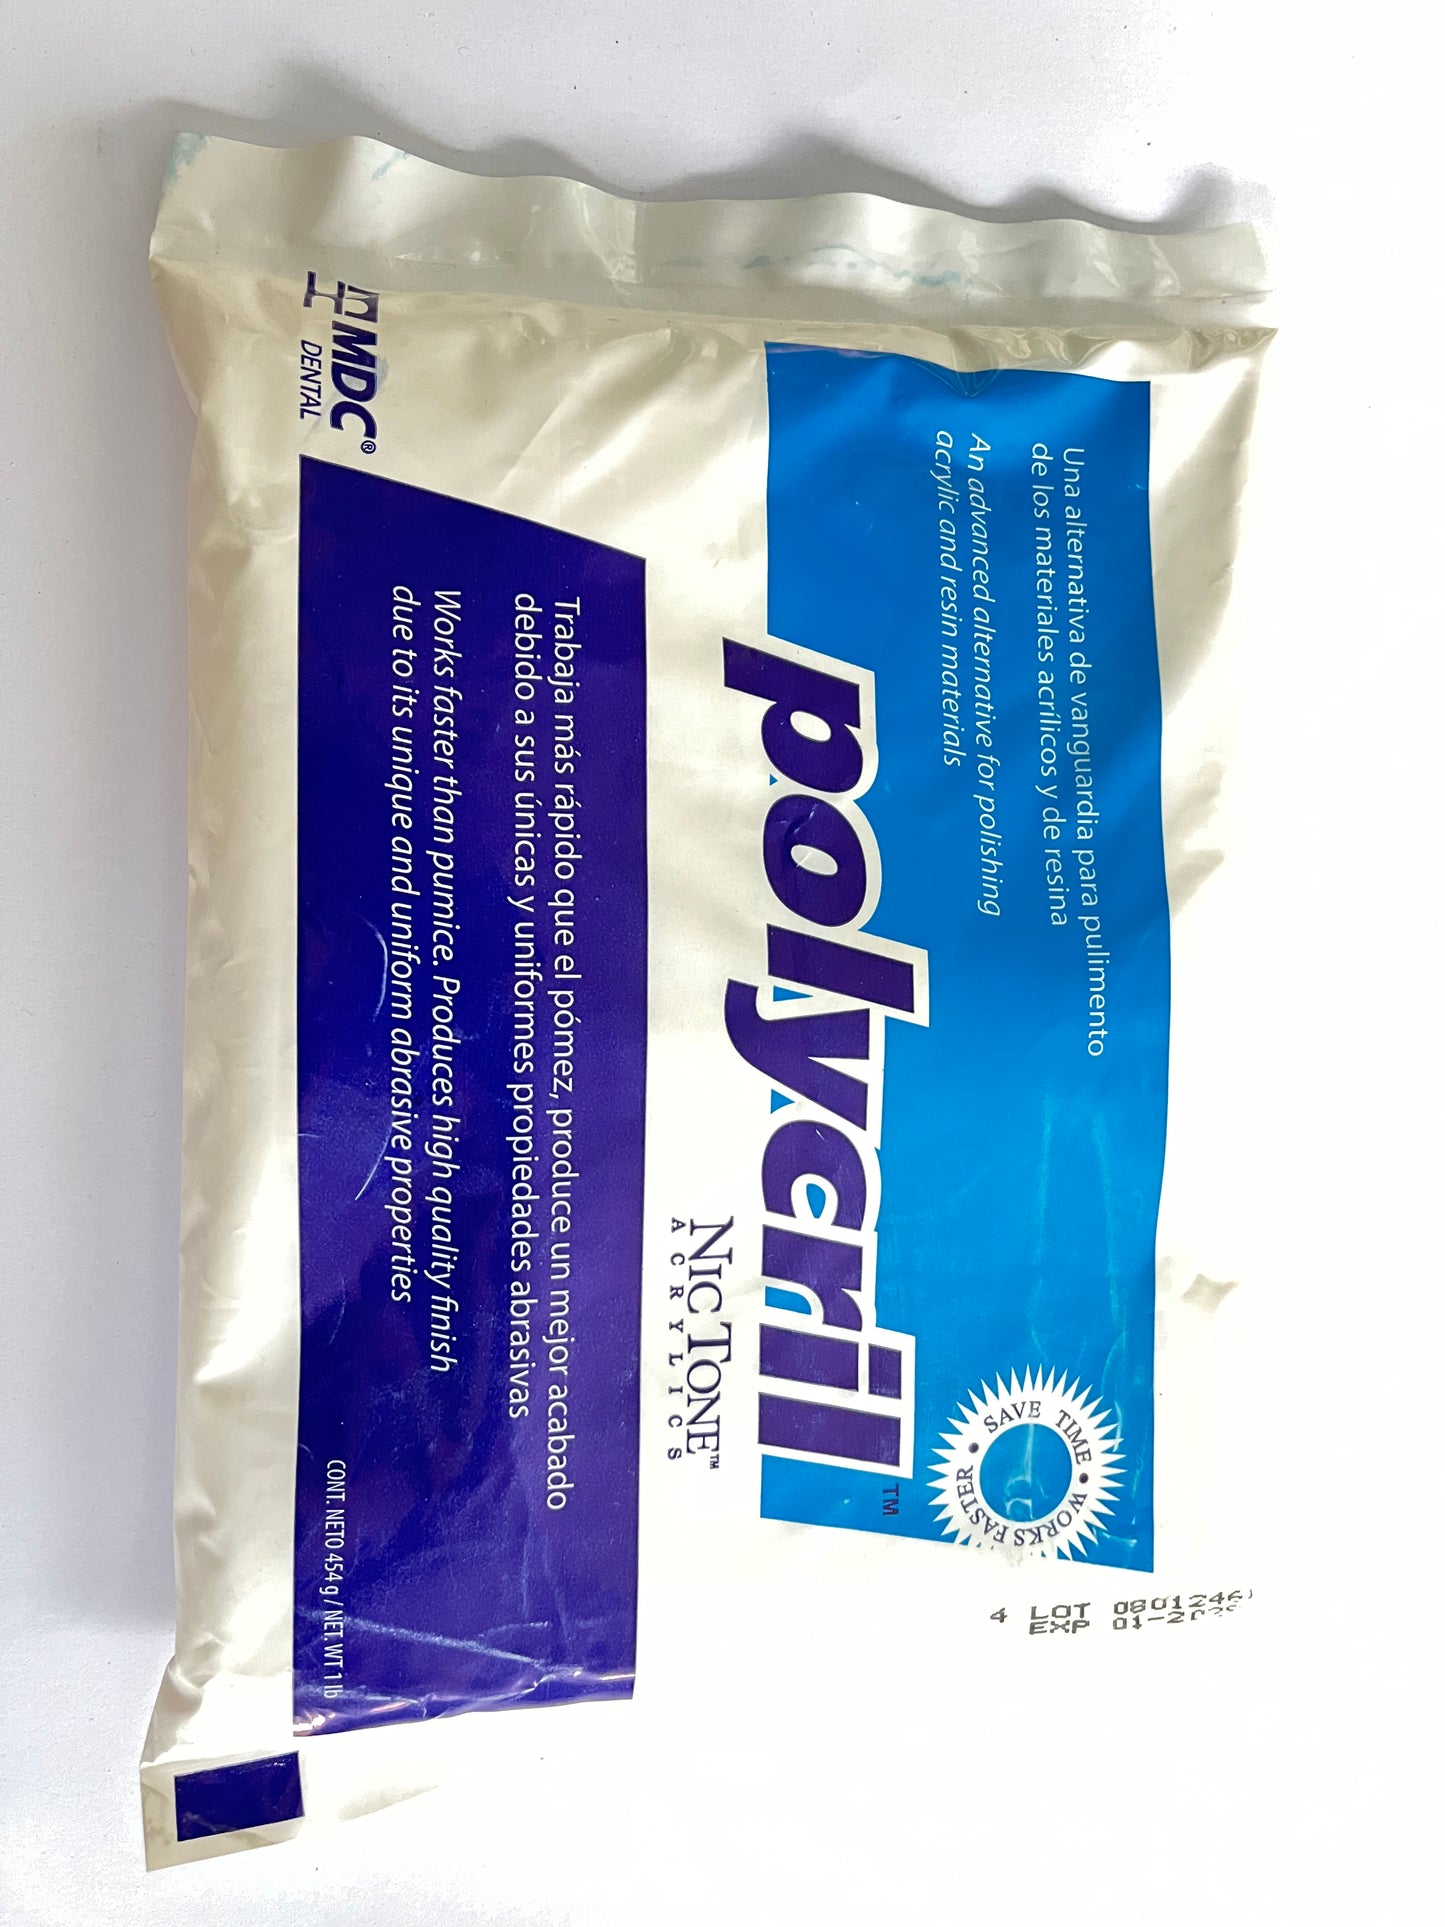 Polycril bolsa de 454 gramos